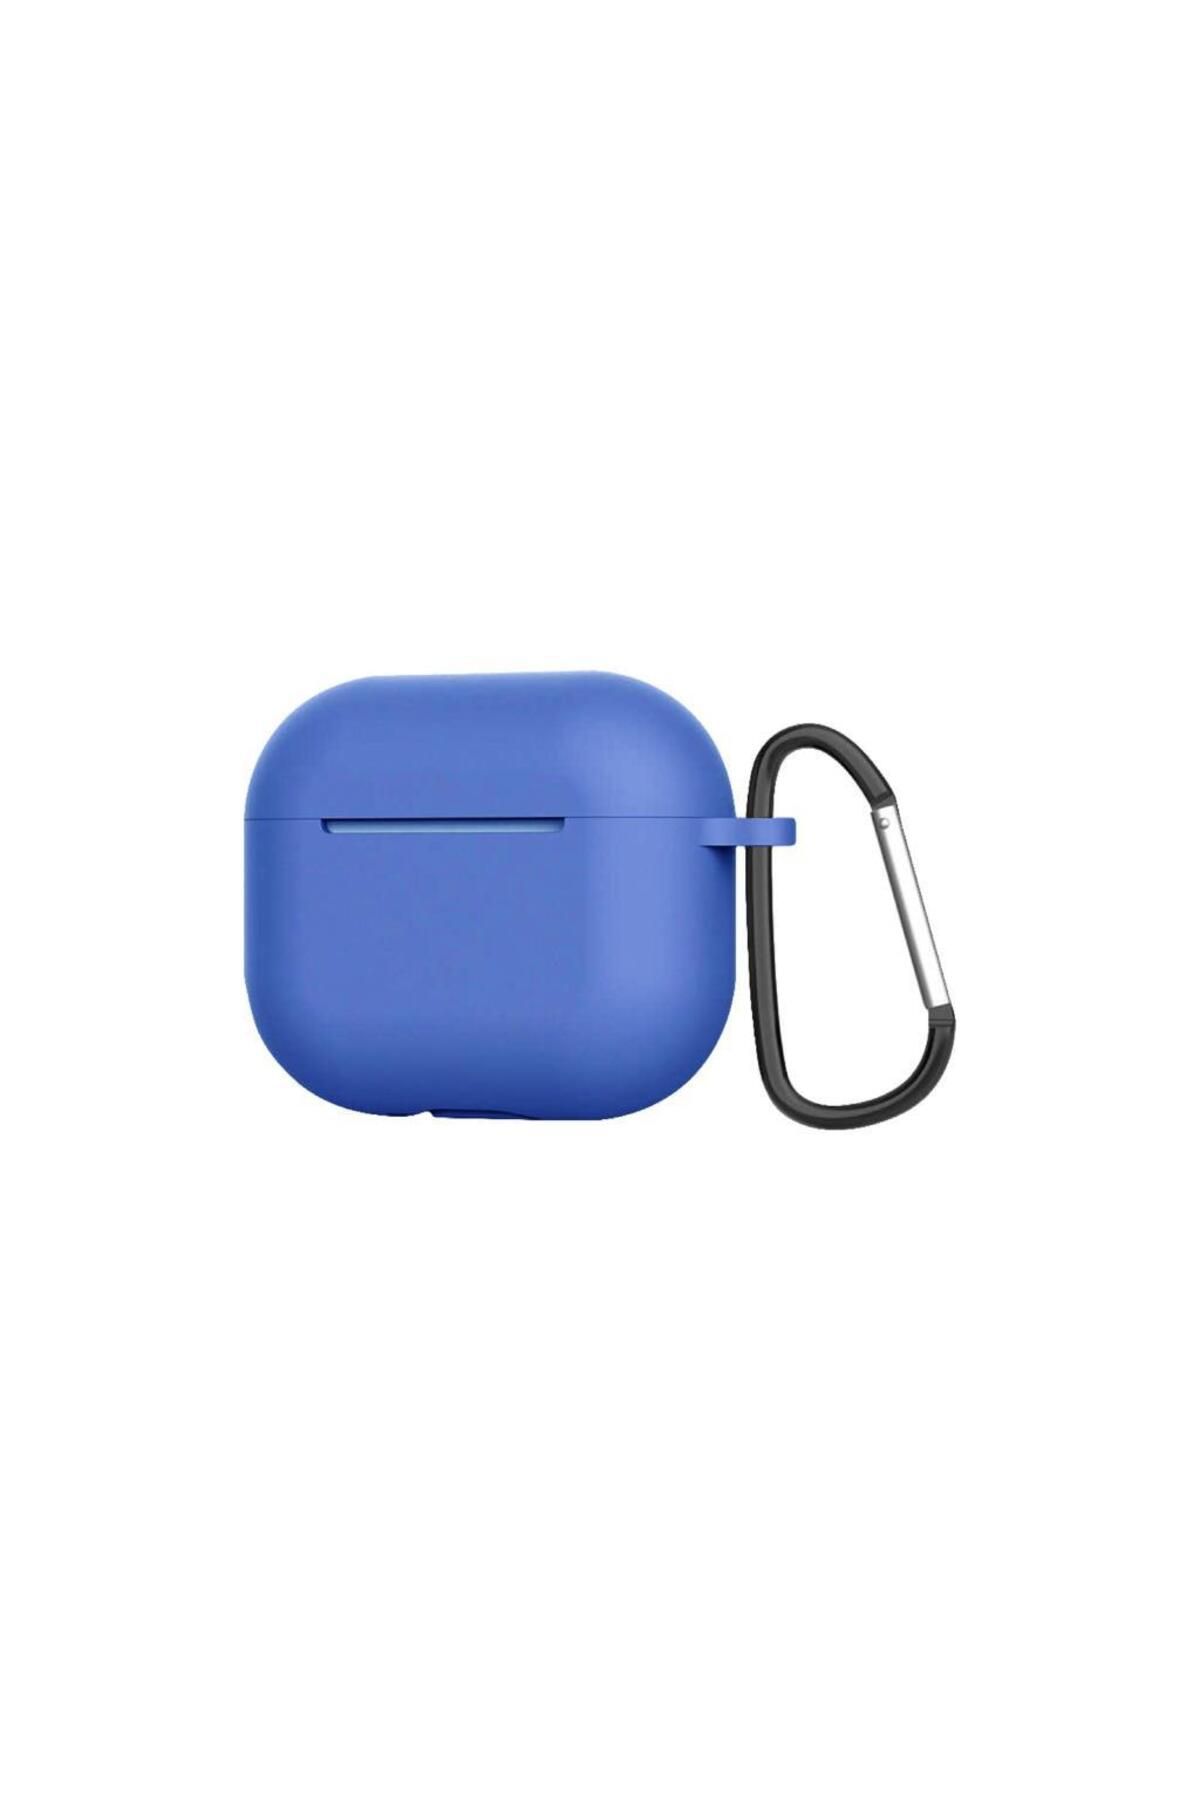 Sunix Airpod Pro Ile Uyumlu Silikon Kulaklık Kılıfı Mavi